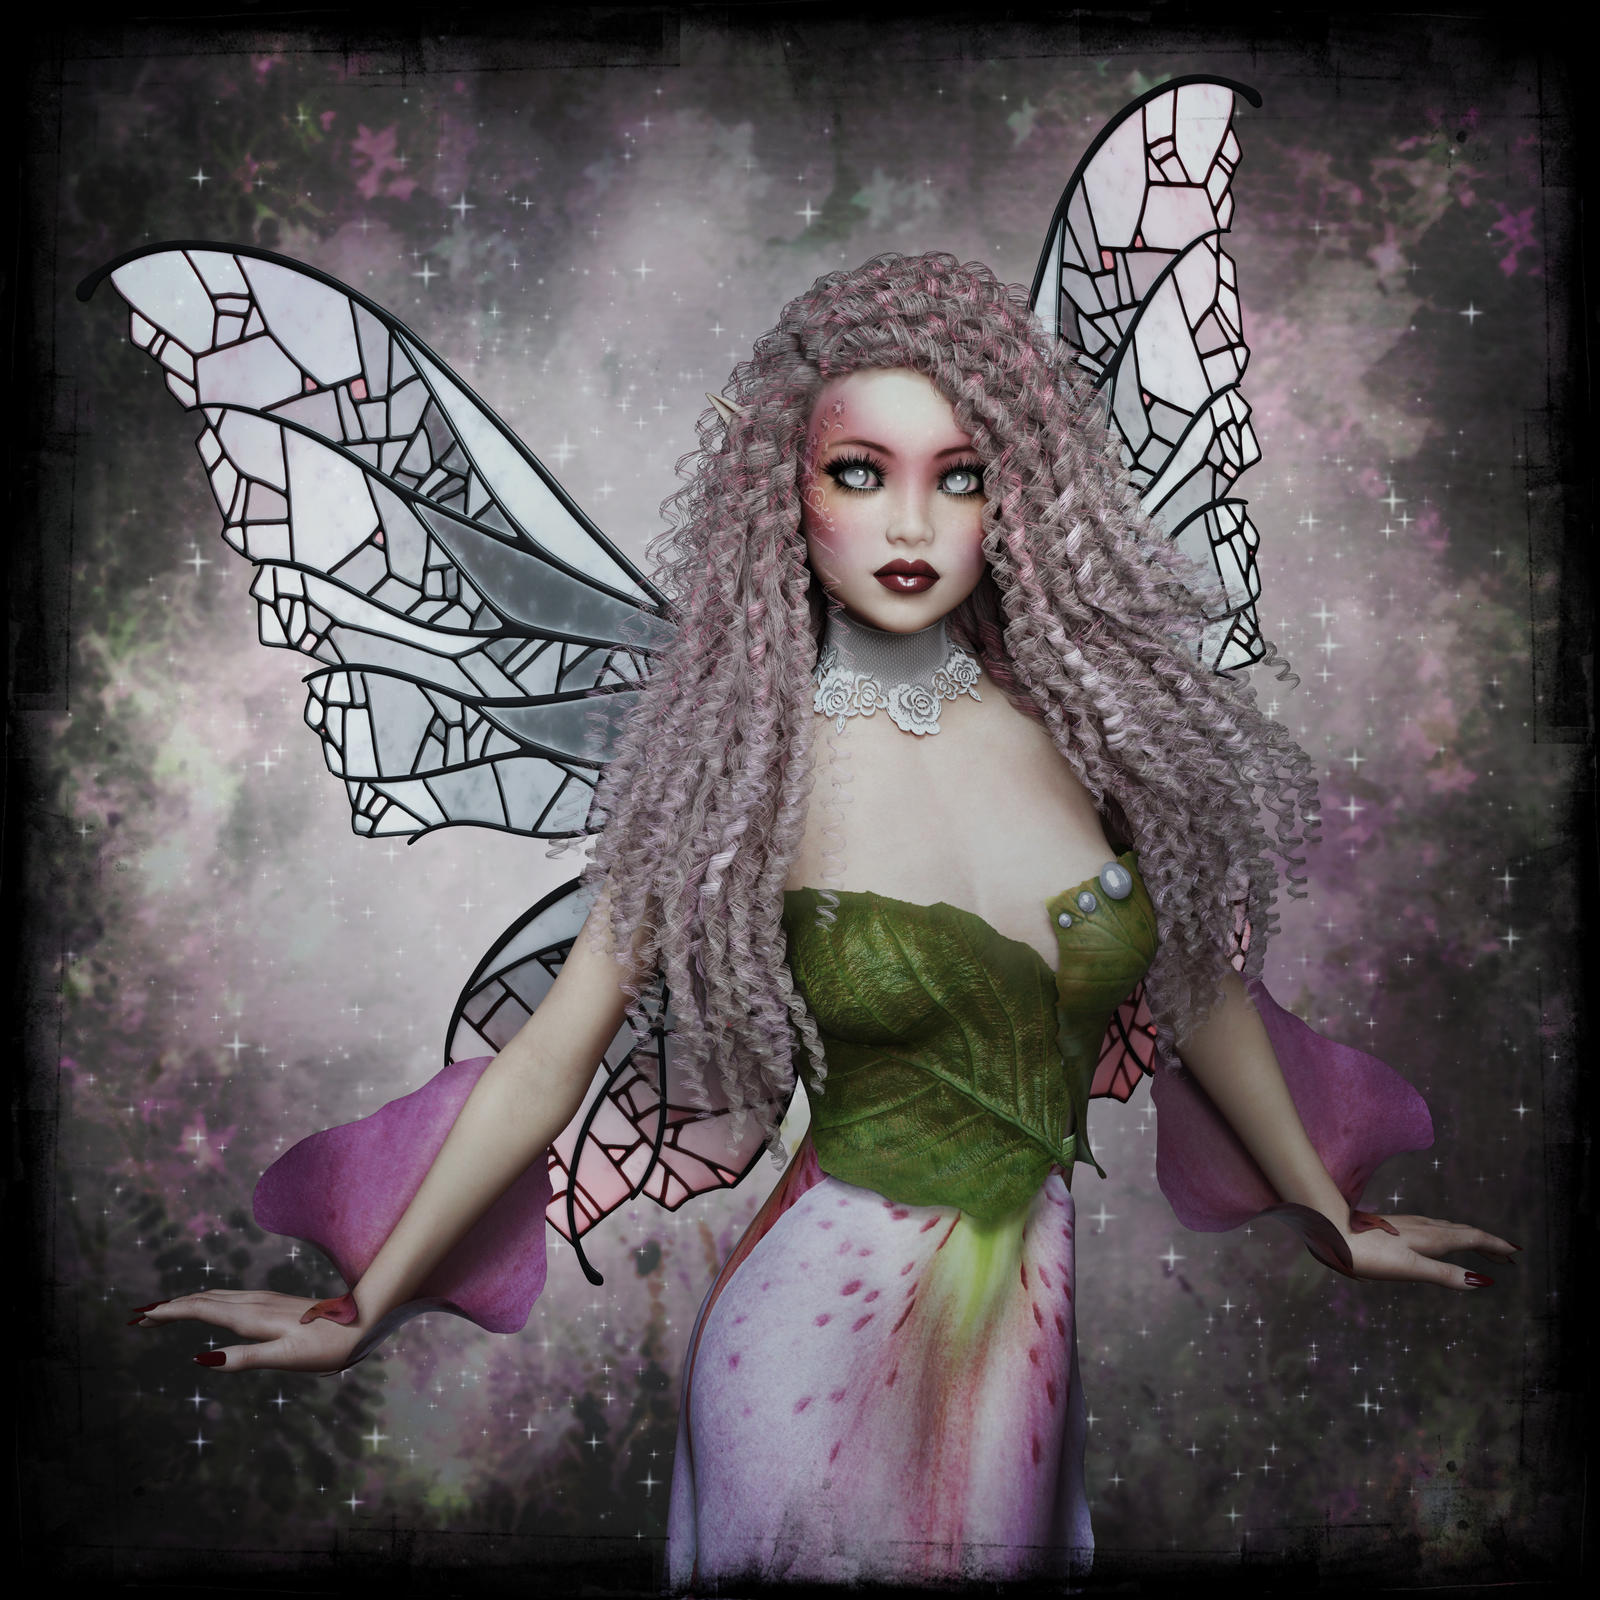 Fairy Grunge by DarkRealmsMaiden on DeviantArt